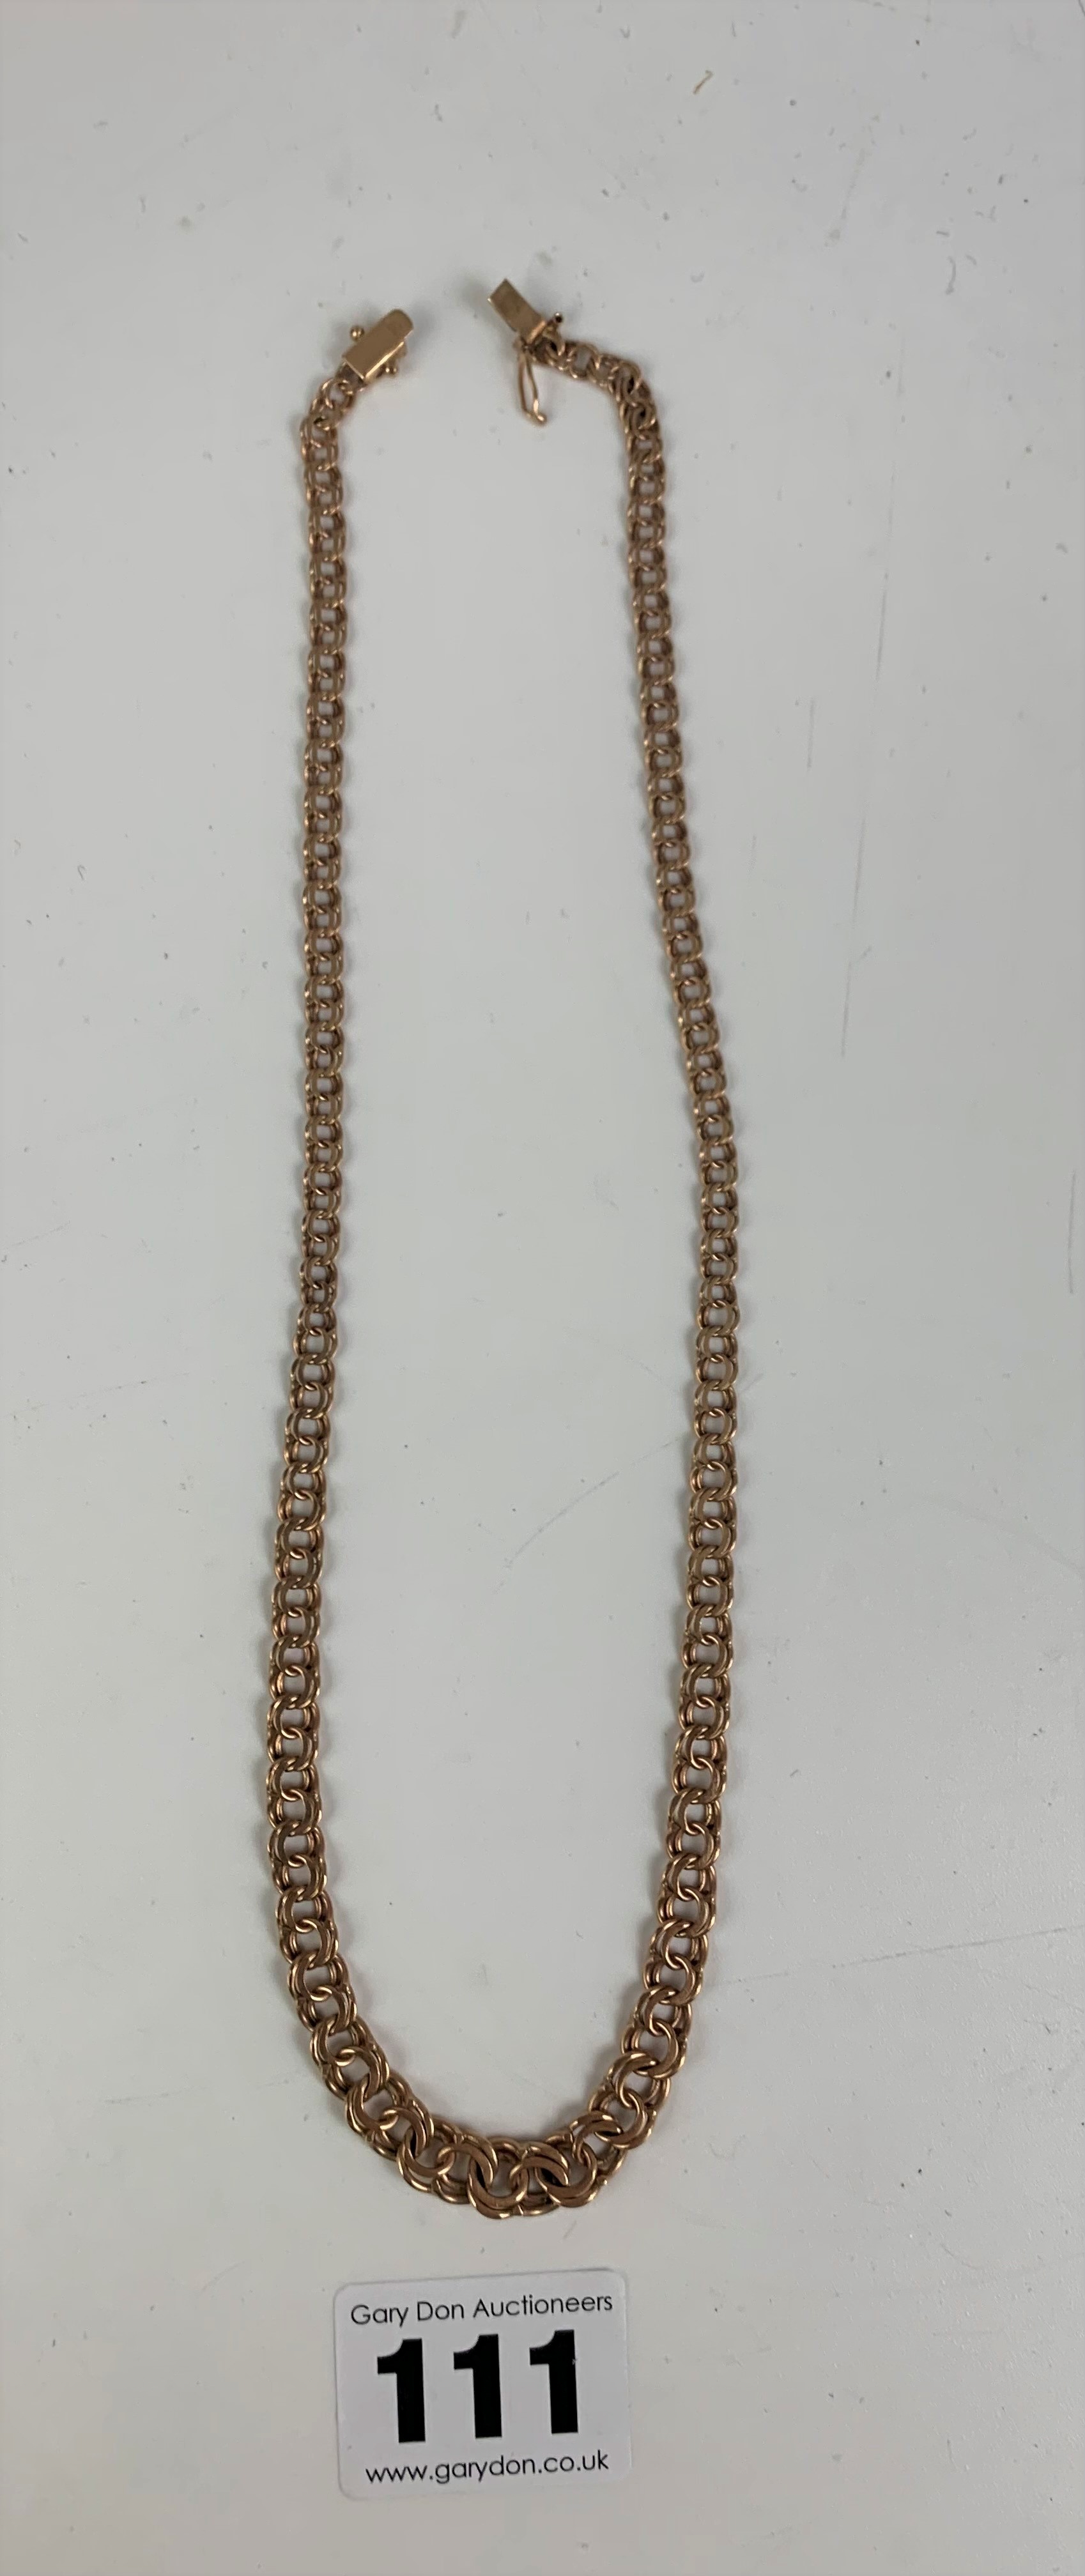 9k gold link necklace, length 17”, w: 14.8 gms